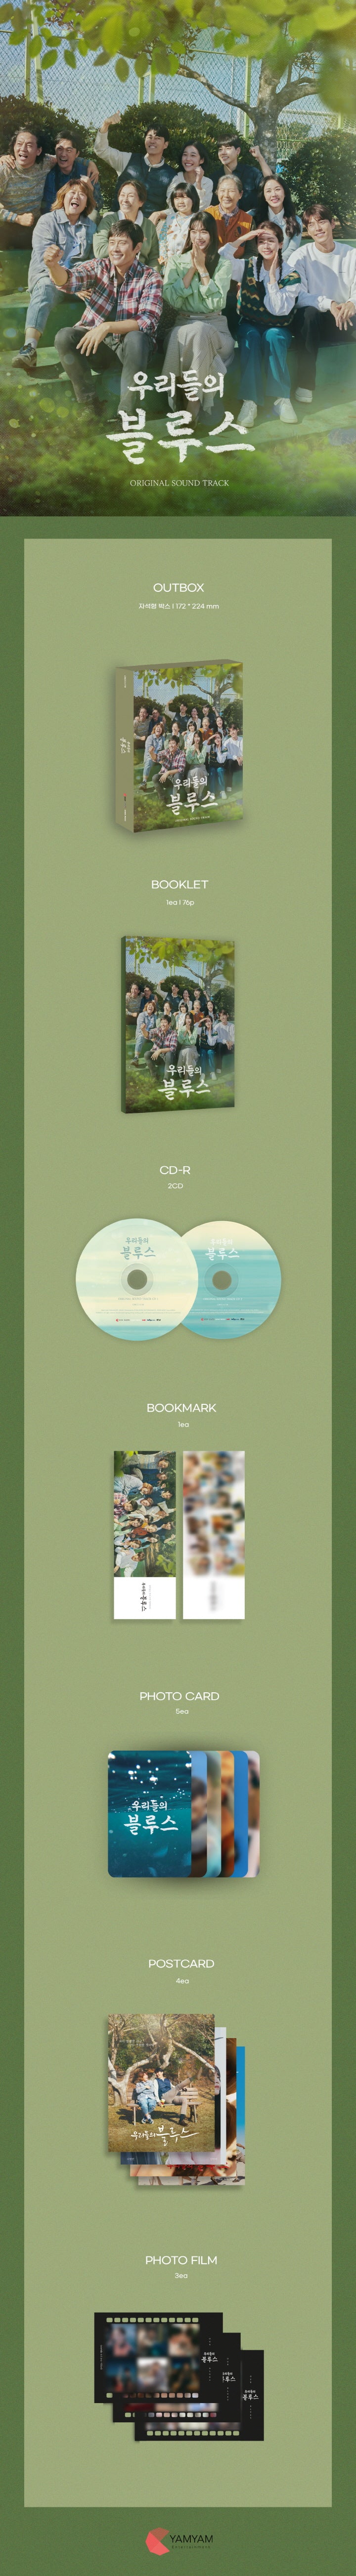 私たちのブルース OST (2CD)